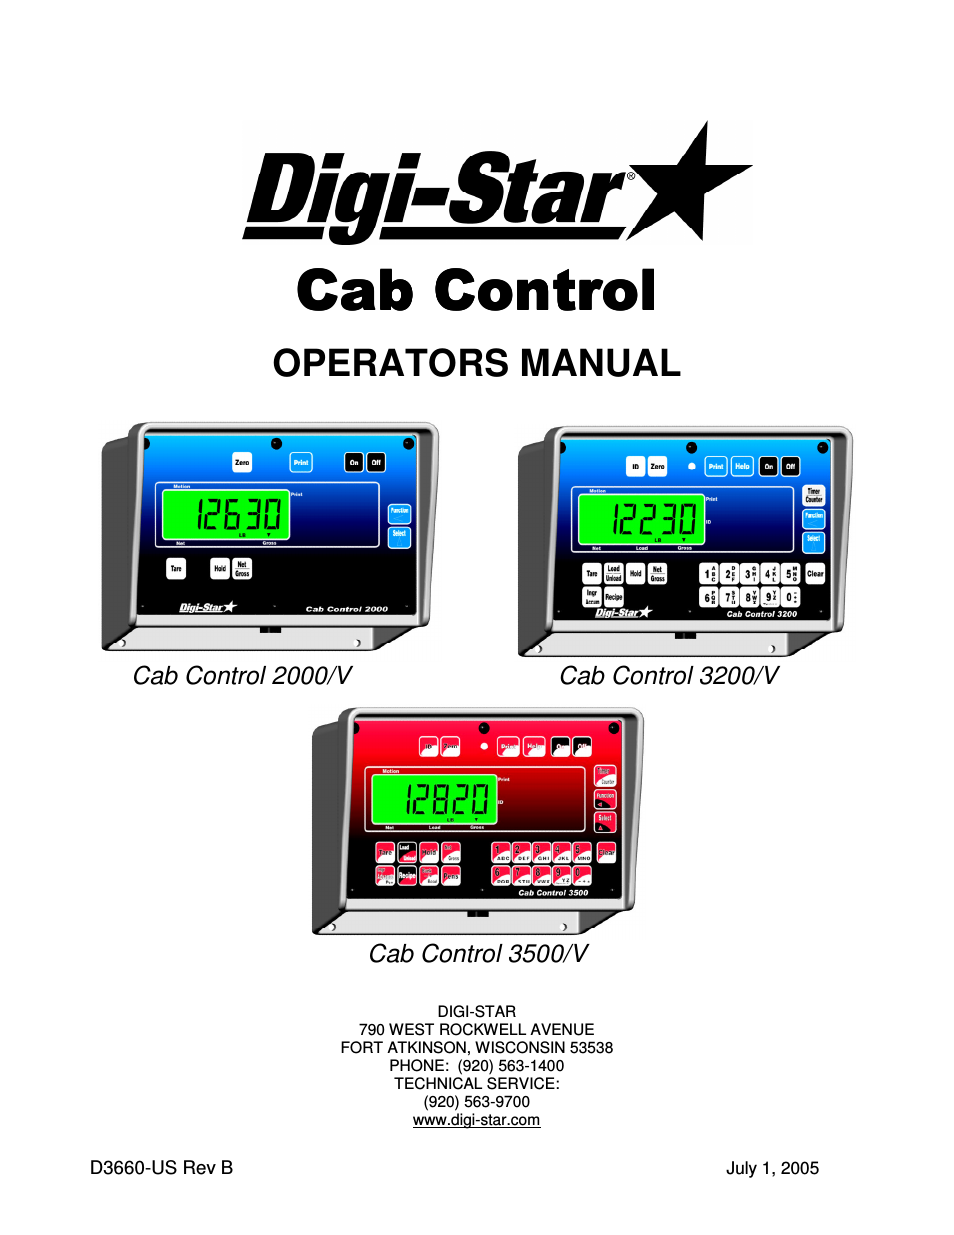 Cab Control 3500/V